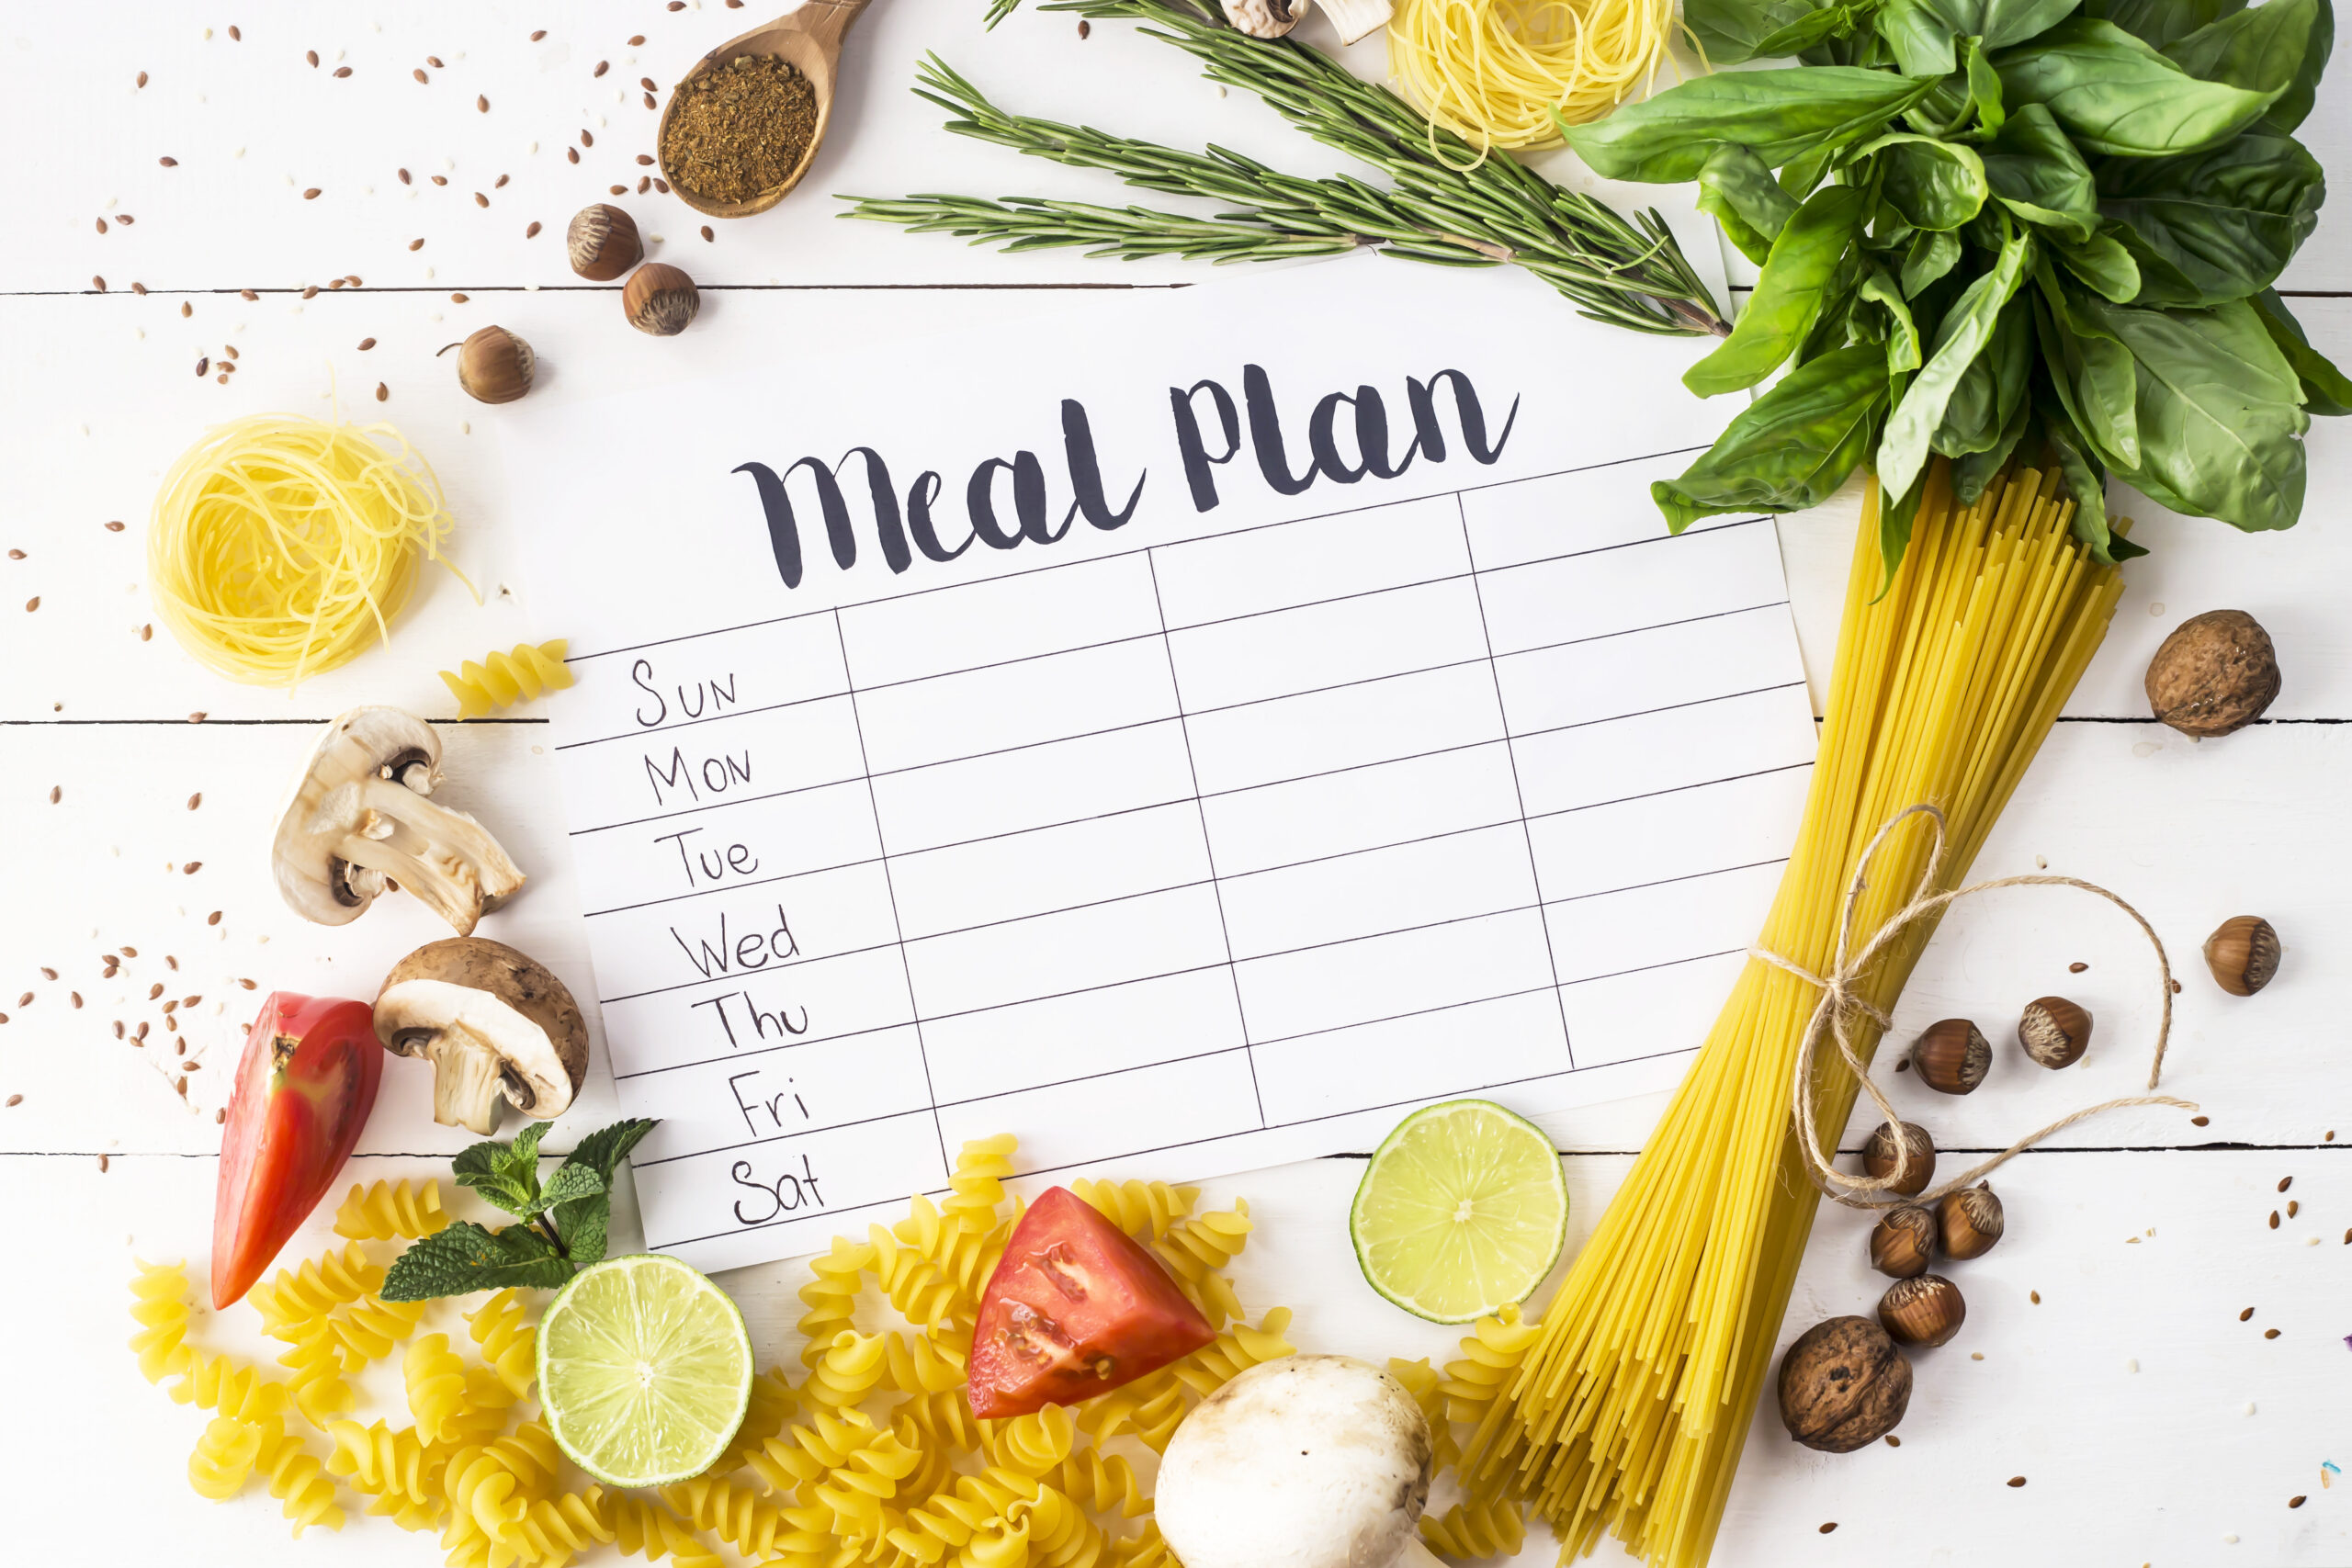 Weekly written meal plan